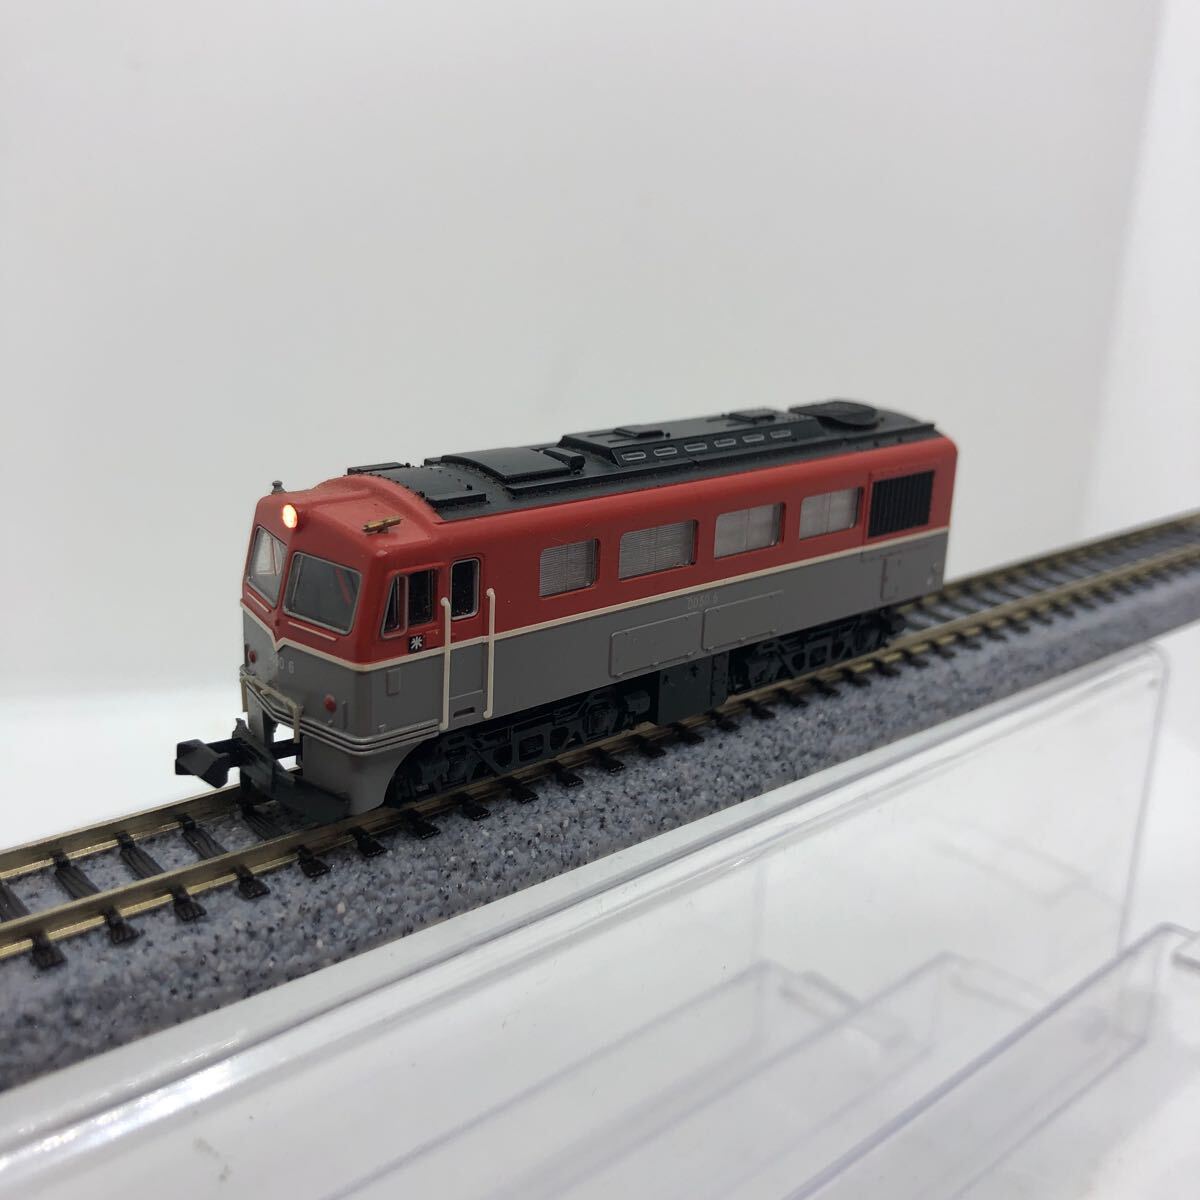 T car DD50 6 diesel locomotive 1 jpy ~